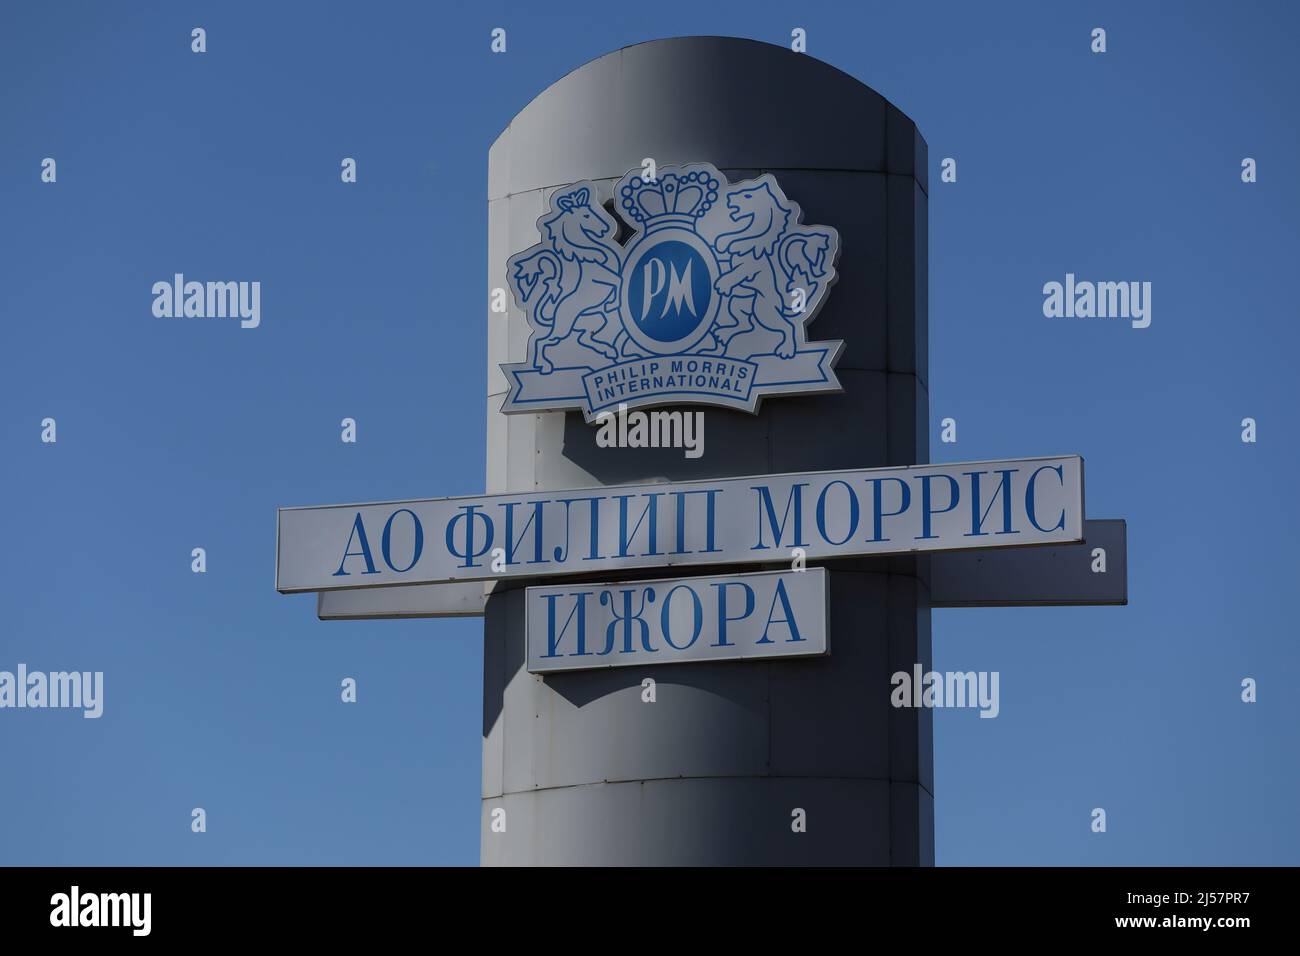 Le logo de la société est visible près de l'usine Philip Morris Izhora, à l'extérieur de Saint-Pétersbourg, en Russie, le 9 avril 2022. Photo prise le 9 avril 2022. Pour faire correspondre le rapport spécial UKRAINE-CRISE/PHILIPMORRIS-GUNS. PHOTOGRAPHE REUTERS/REUTERS Banque D'Images